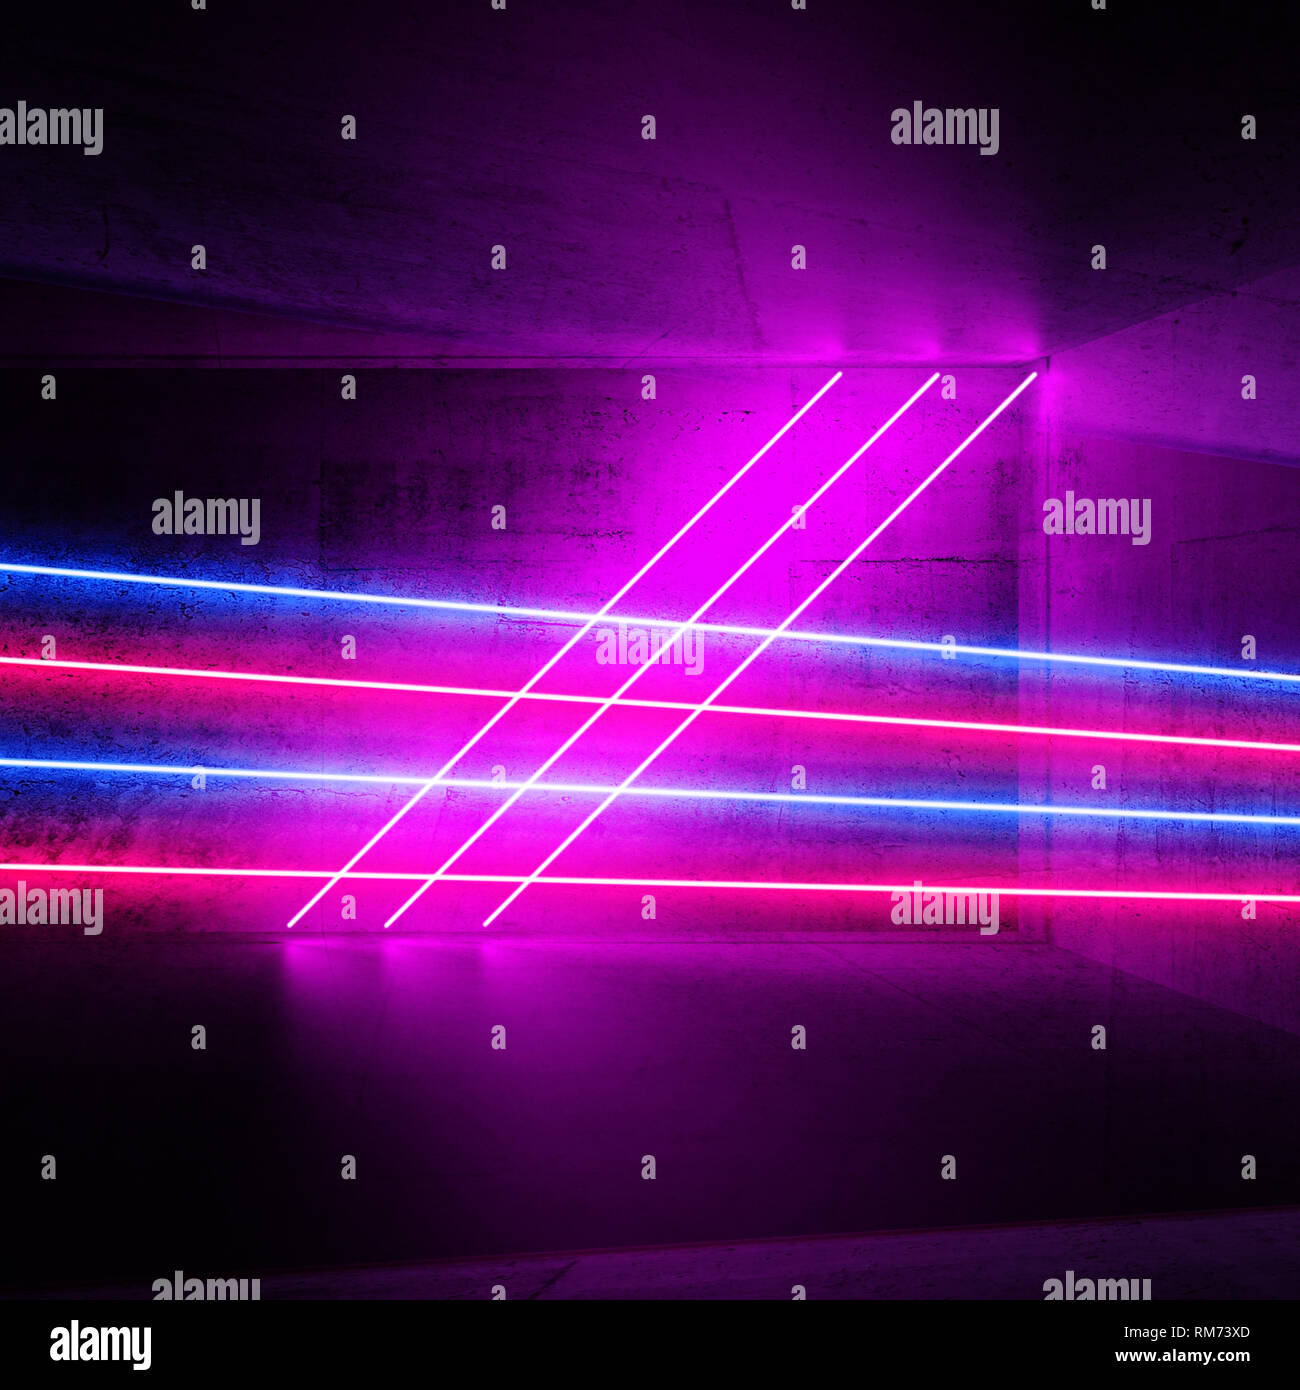 Abstract digital fond graphique avec neon lumineux lignes de lumière, de rendu 3d illustration Banque D'Images